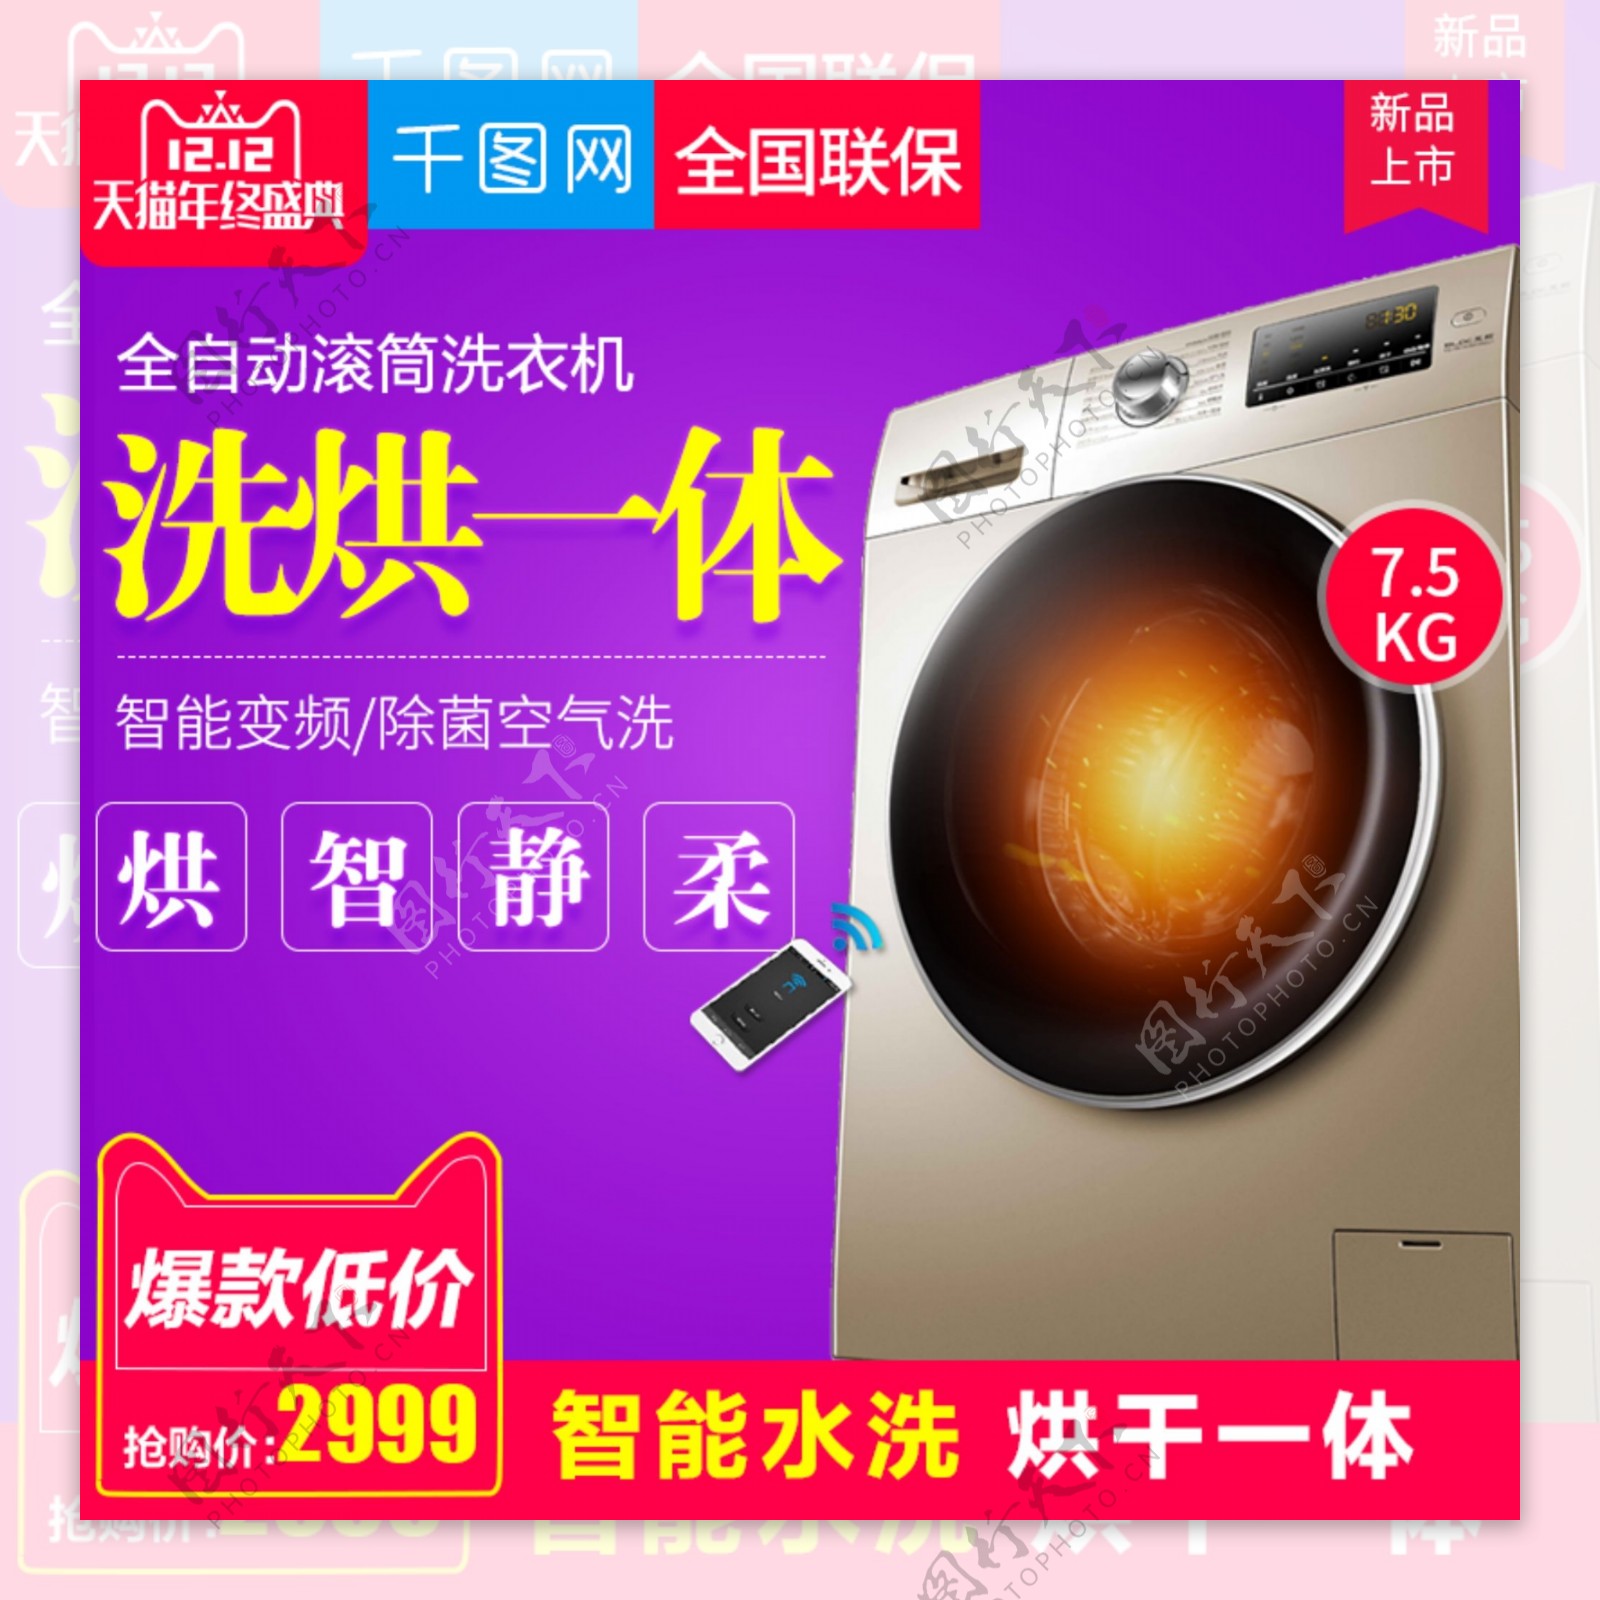 紫色炫彩风格滚筒洗衣机直通车主图模板